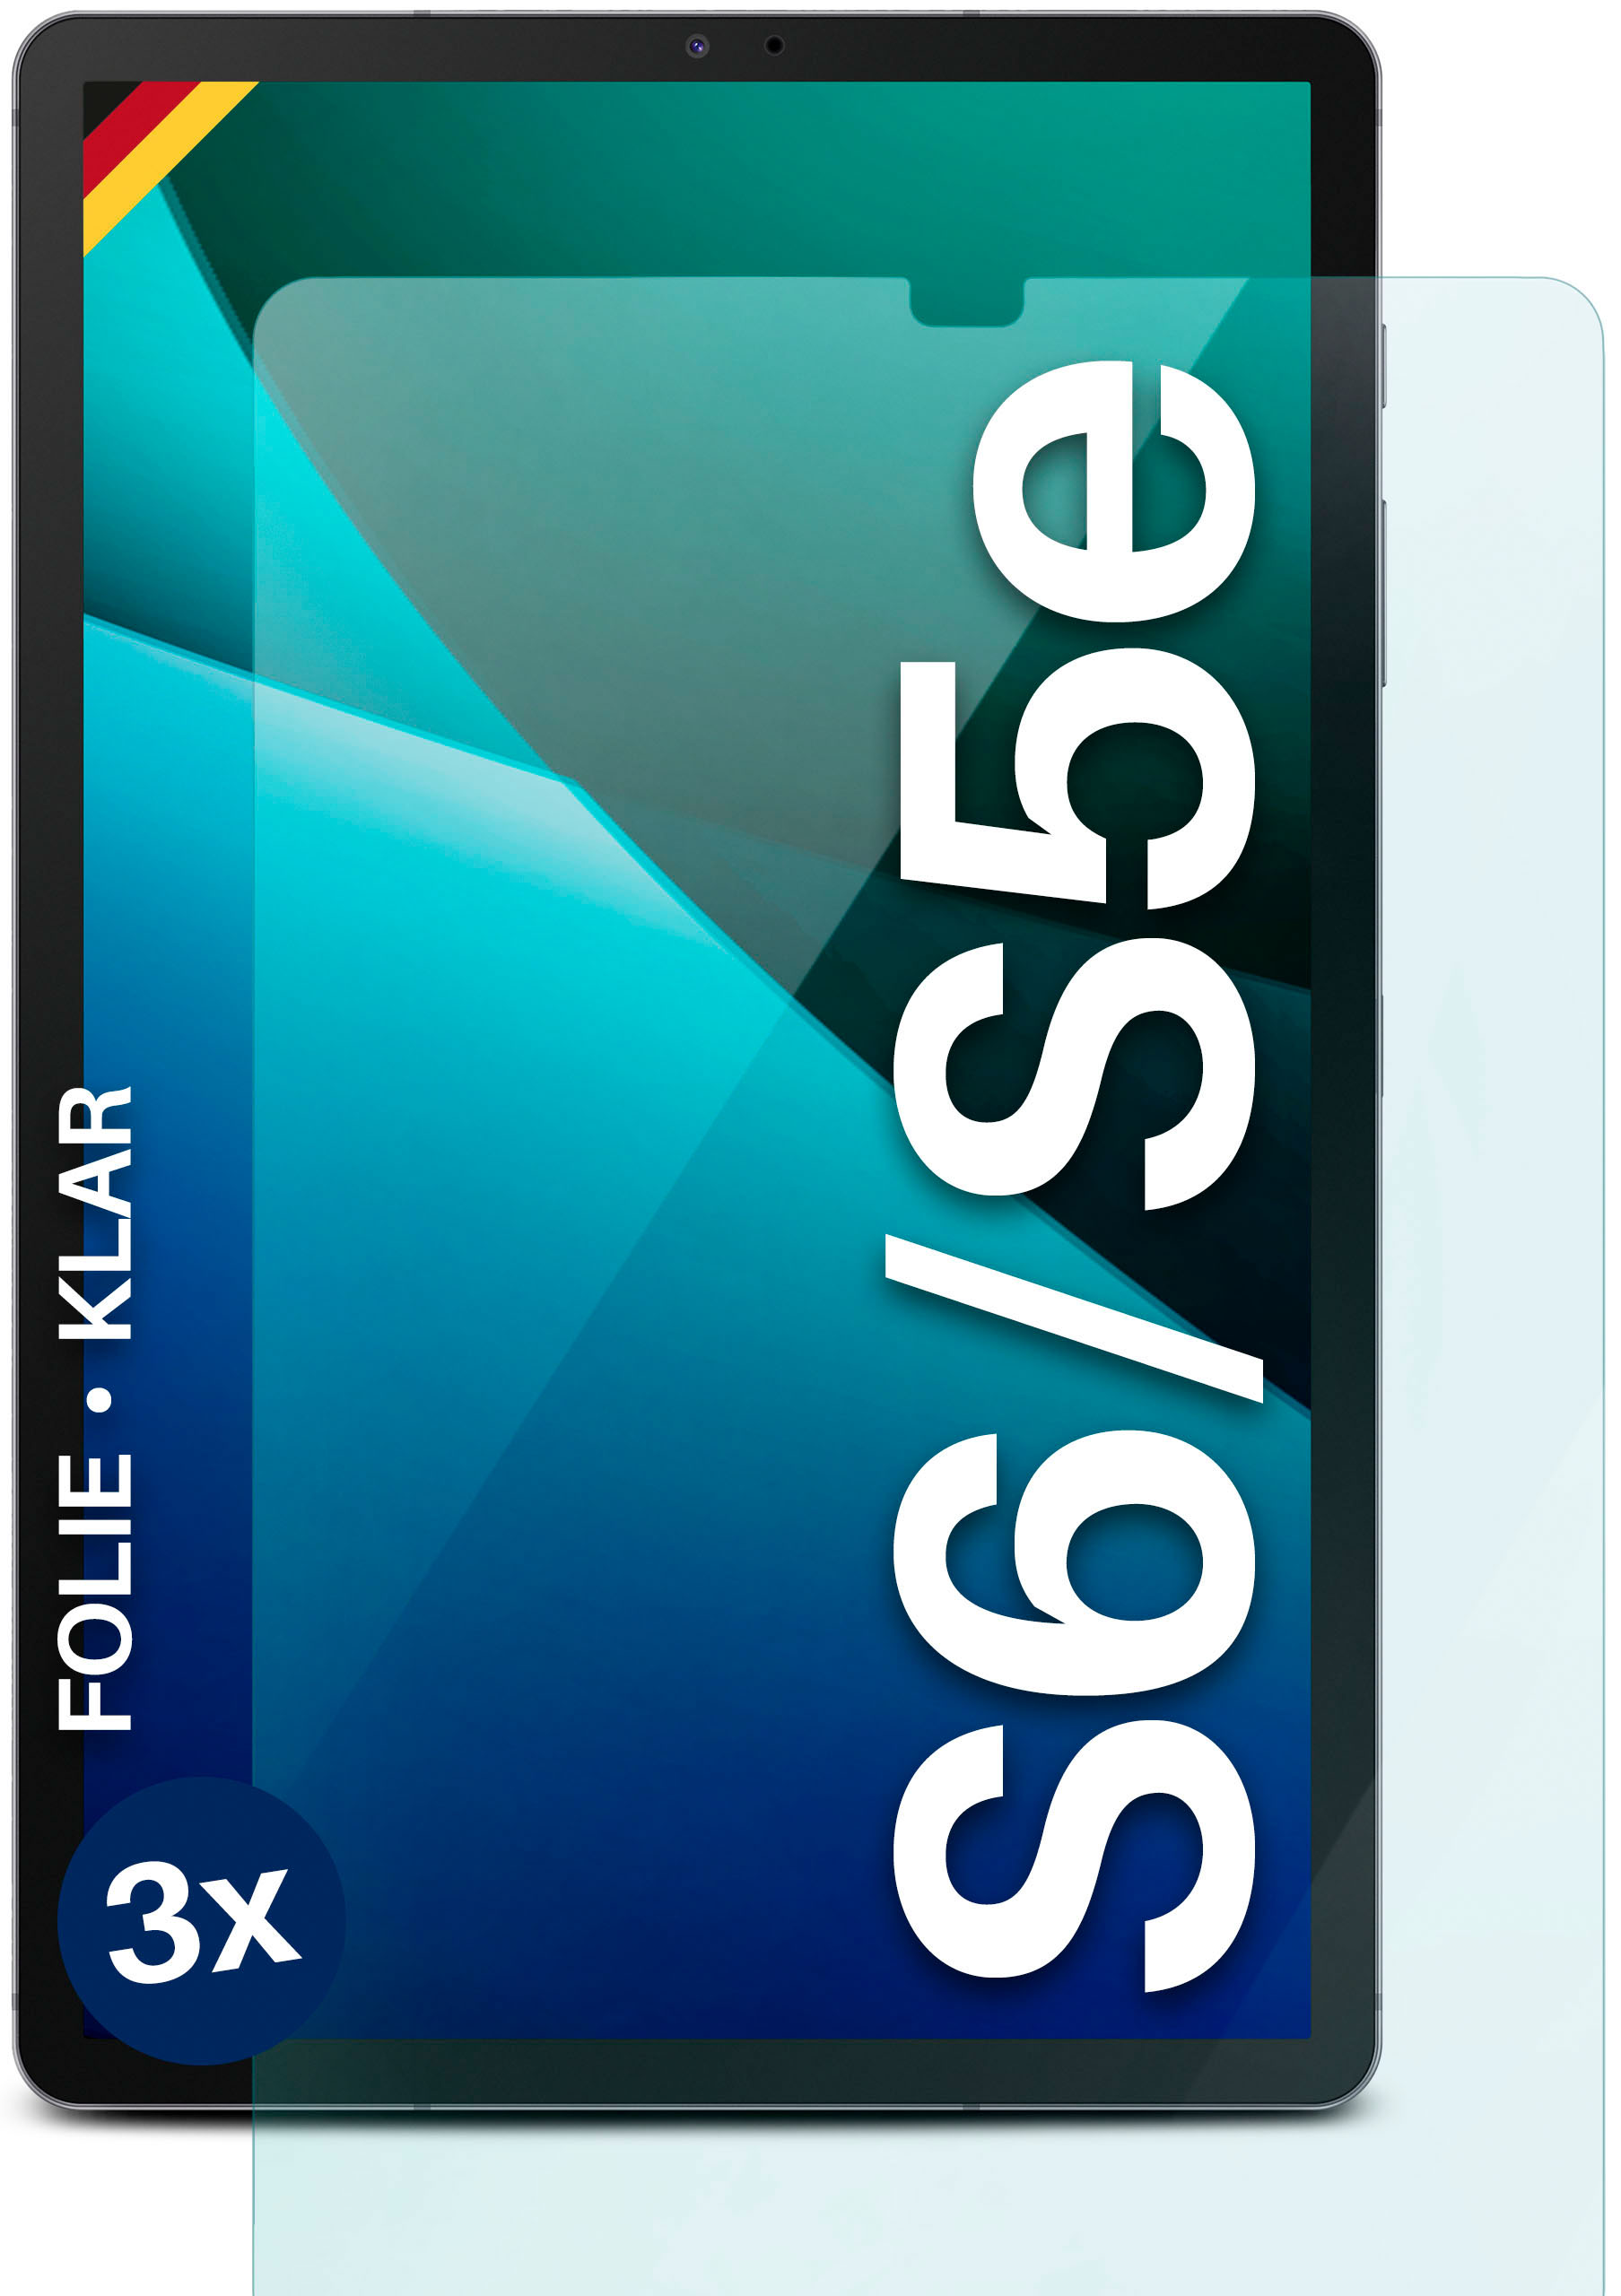 / MOEX Galaxy Samsung S6) Displayschutz(für klar Tab 3x S5e Schutzfolie,